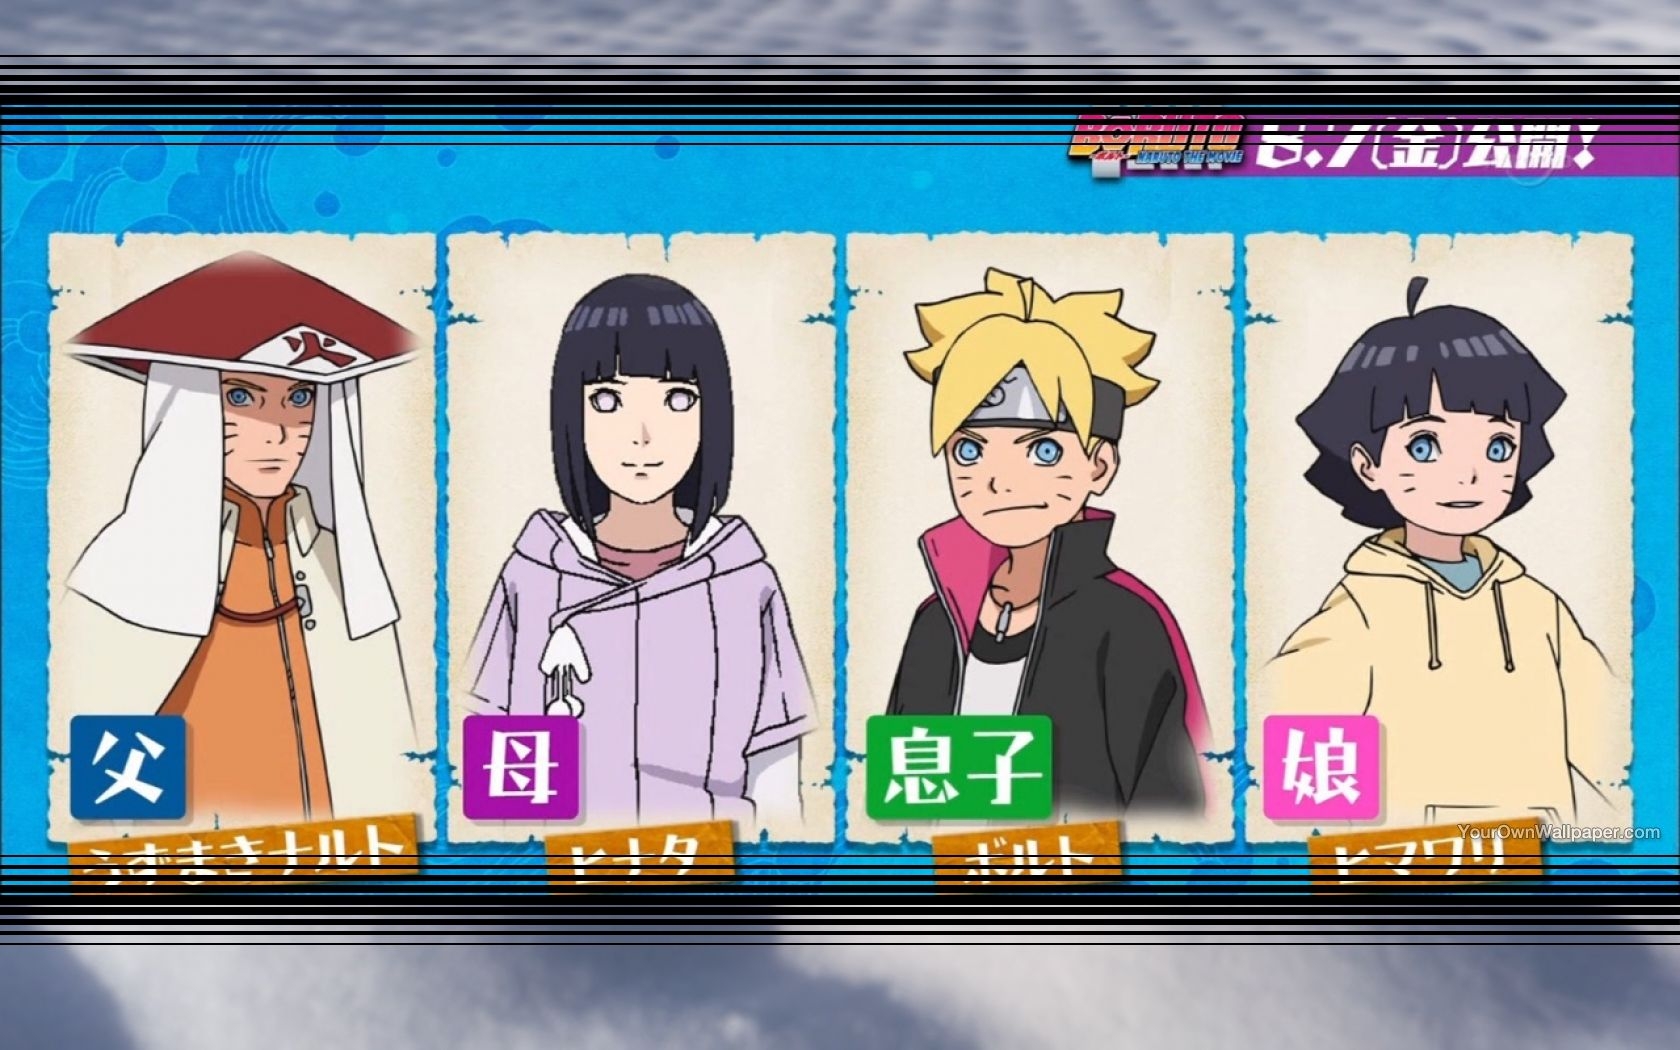 Naruto,Hinata,Boruto,Himawari[naruto Family]